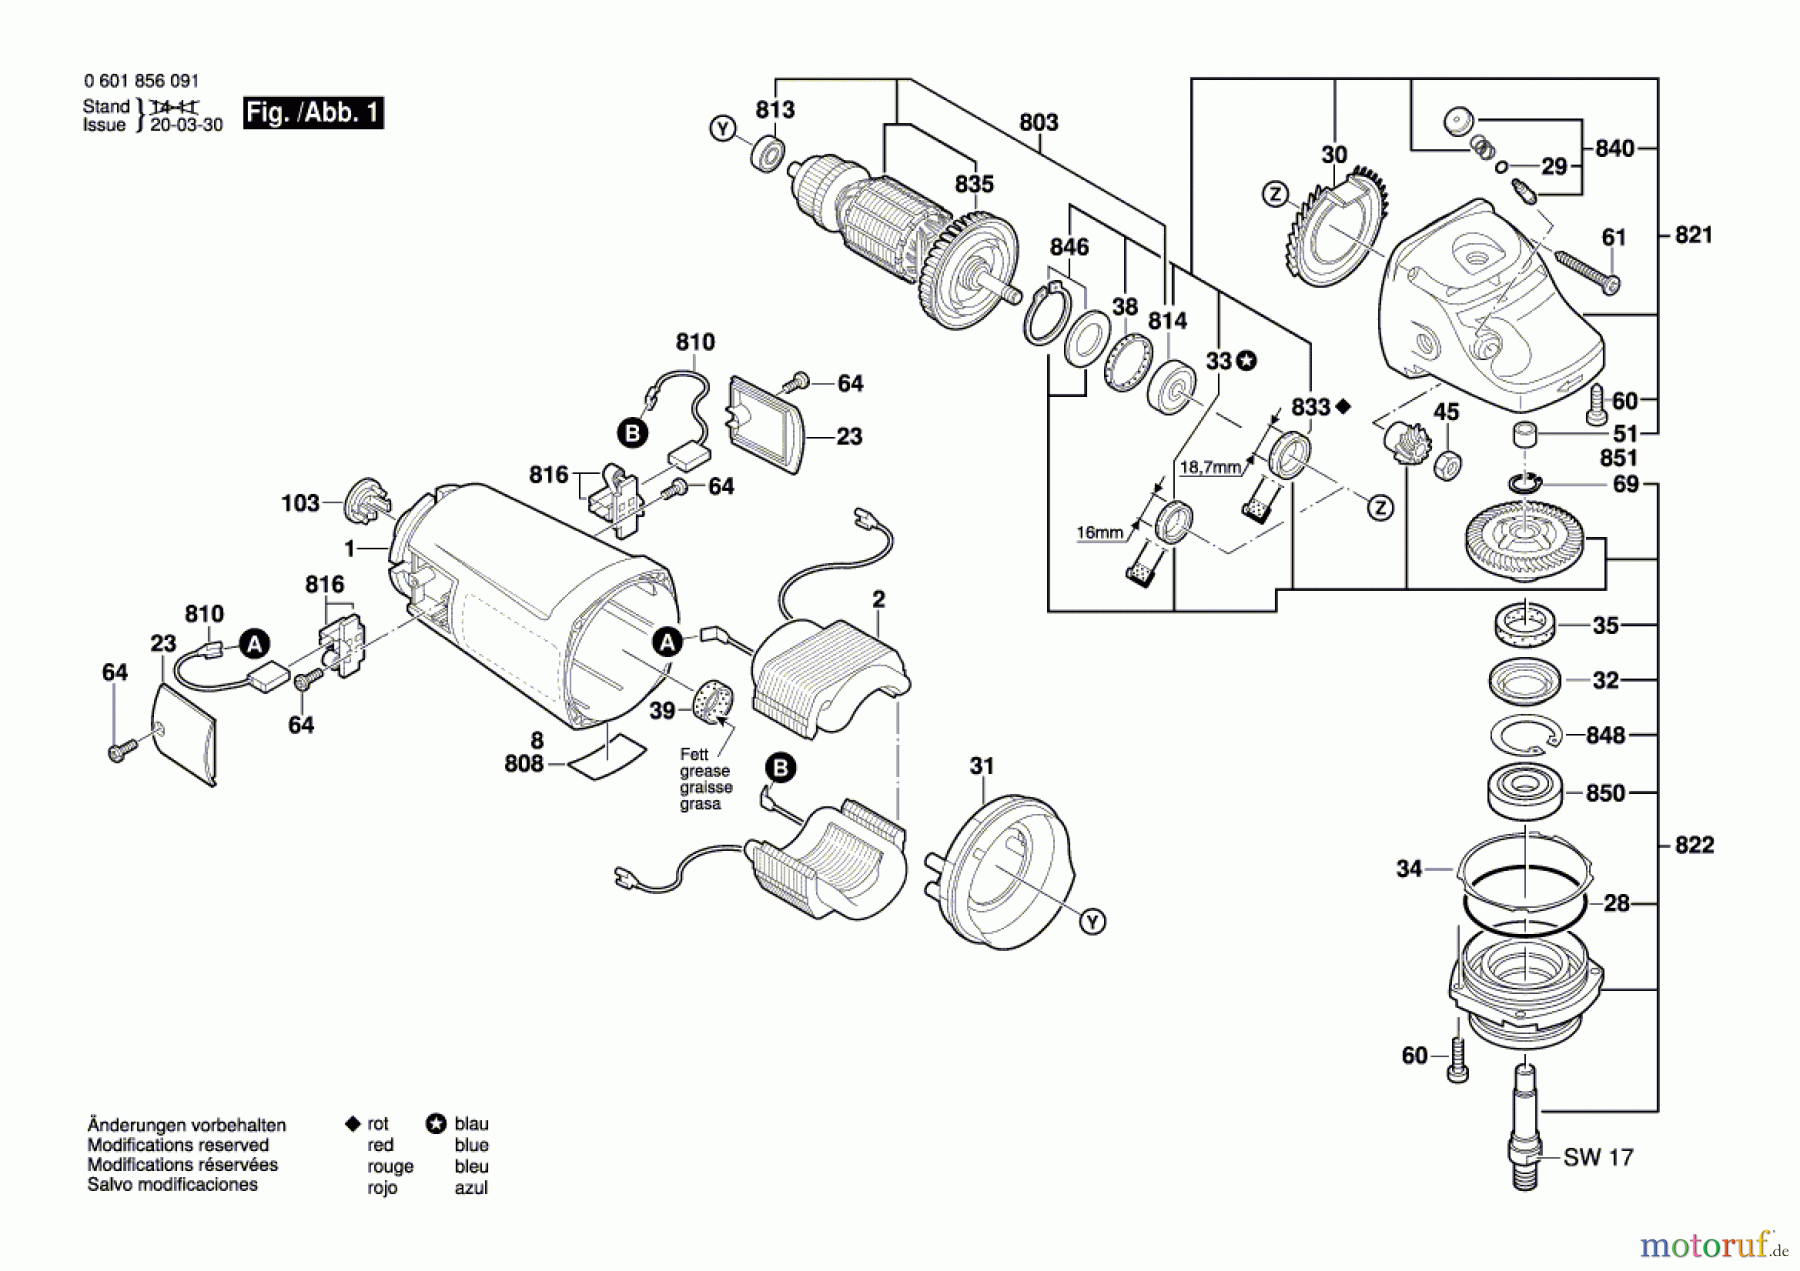  Bosch Werkzeug Anbaumotor GWS 26-230 JB Seite 1